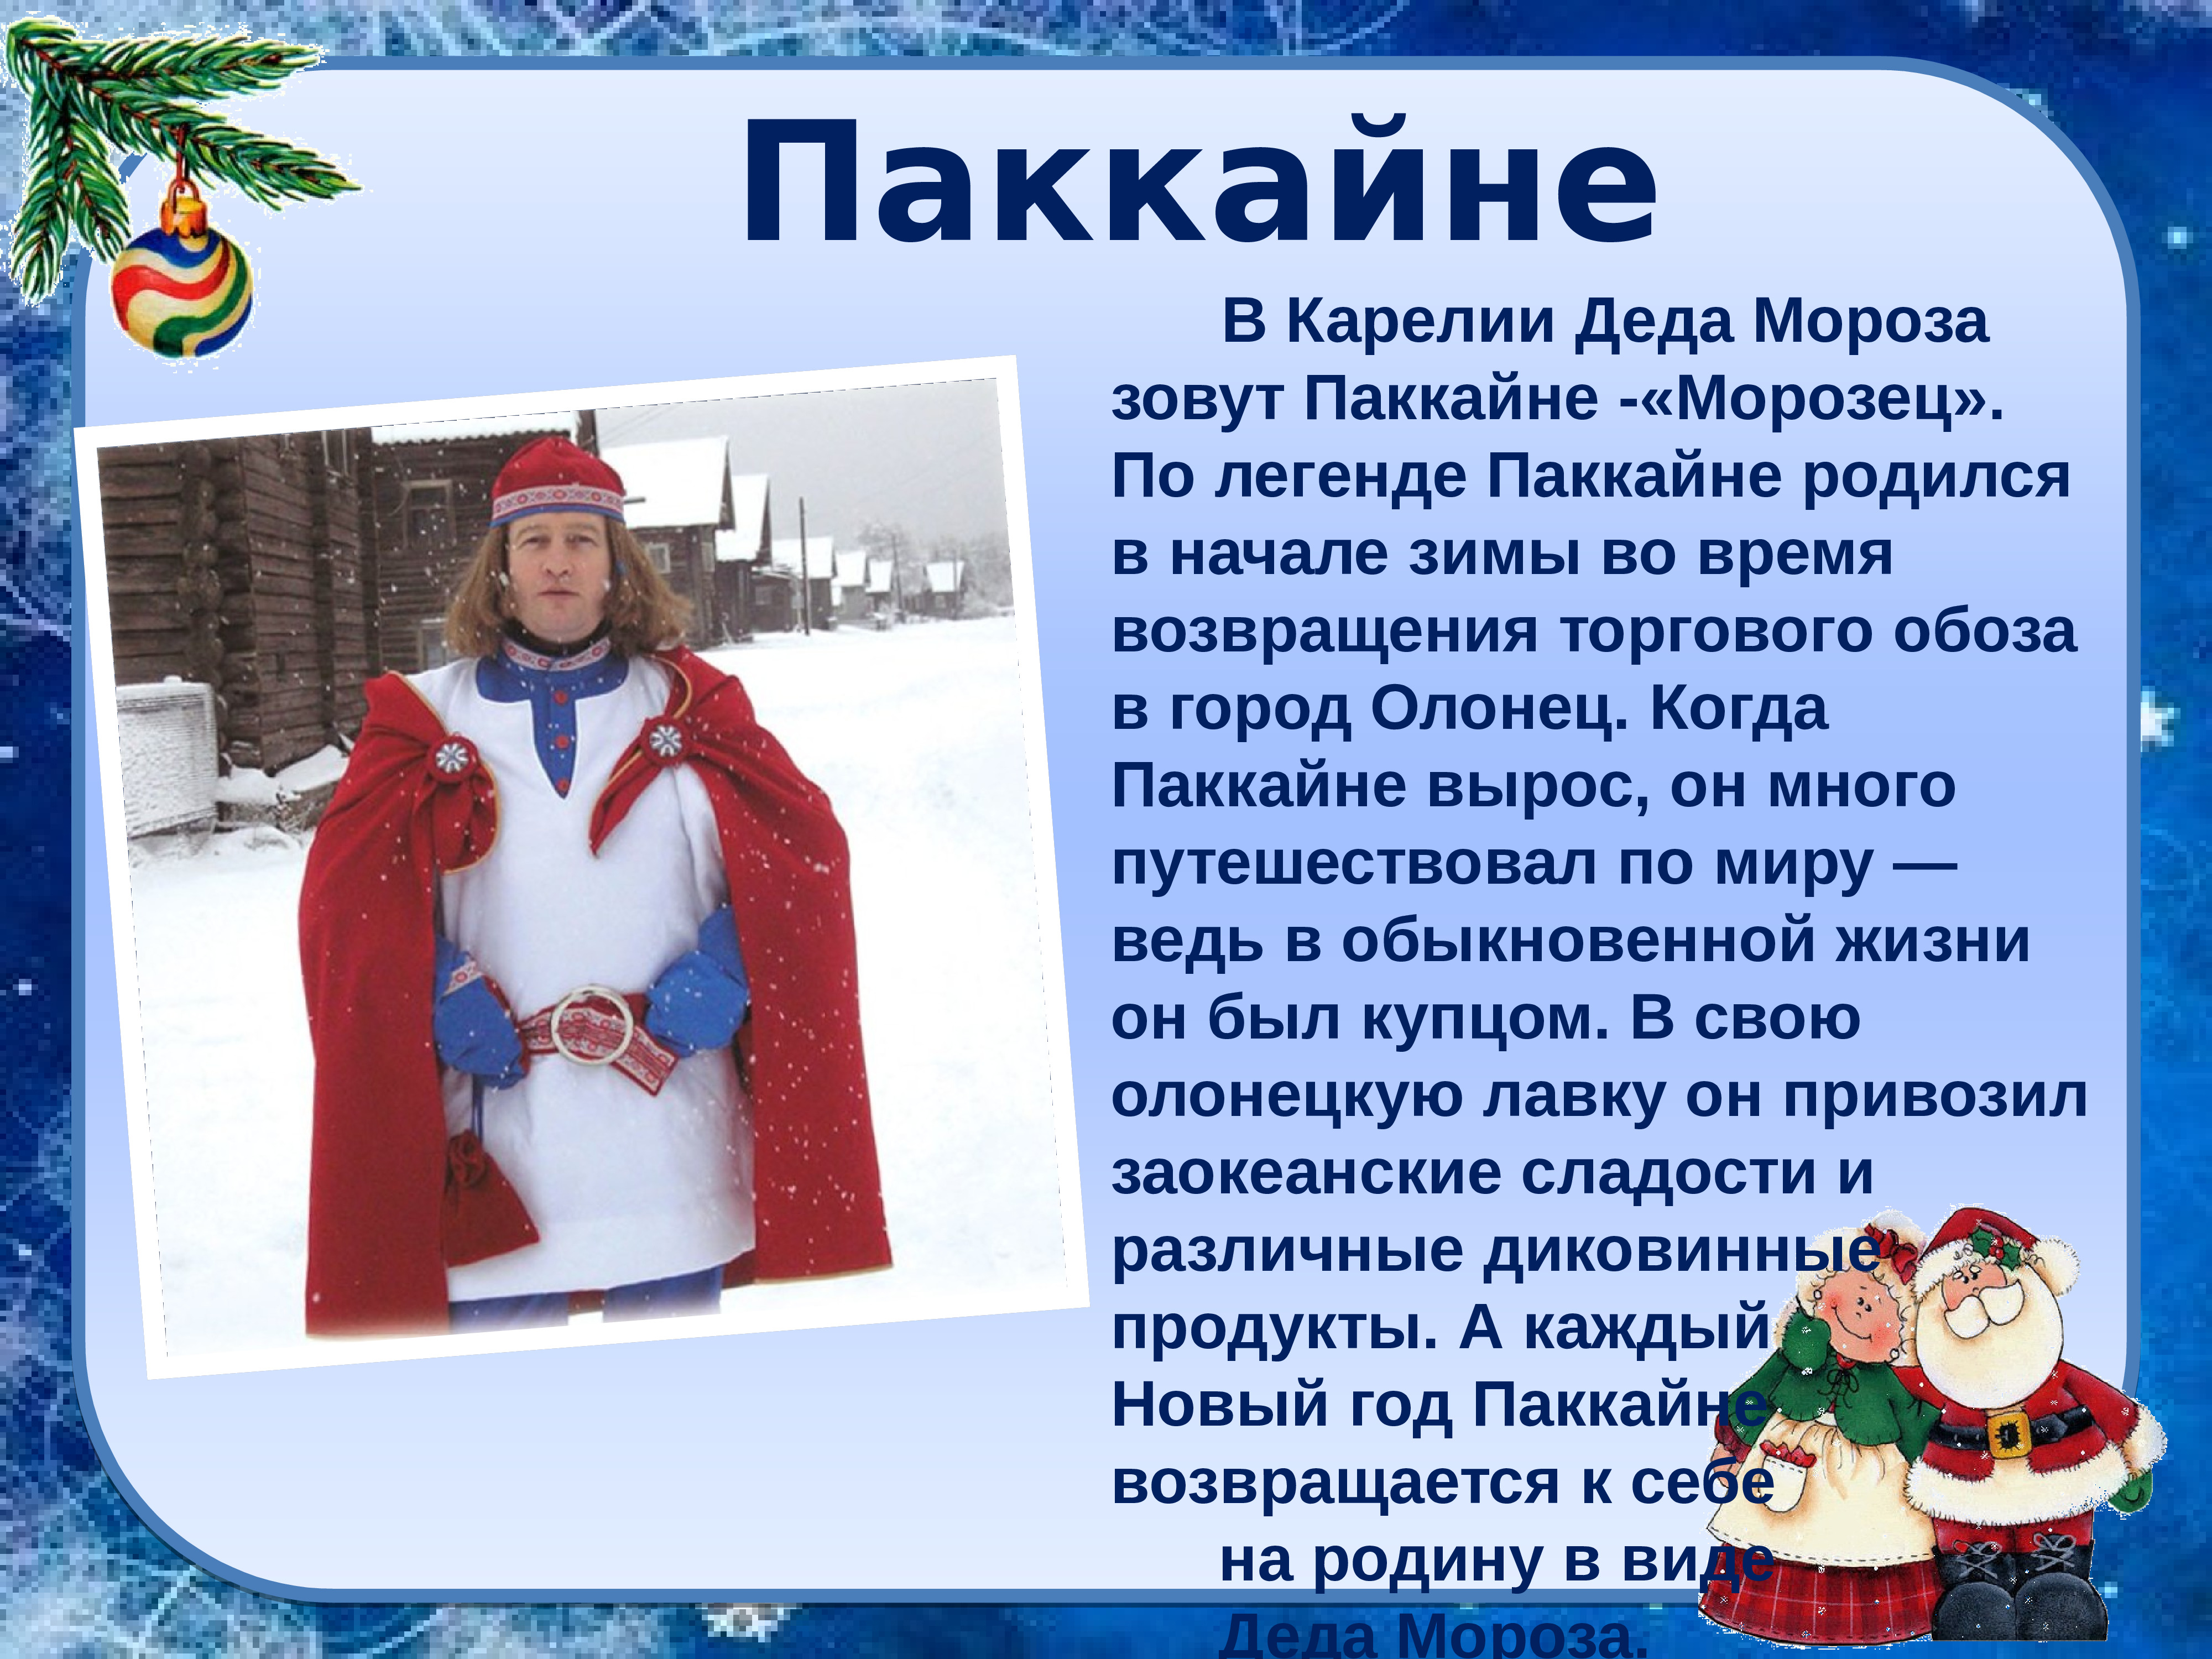 Деды морозы разных городов россии